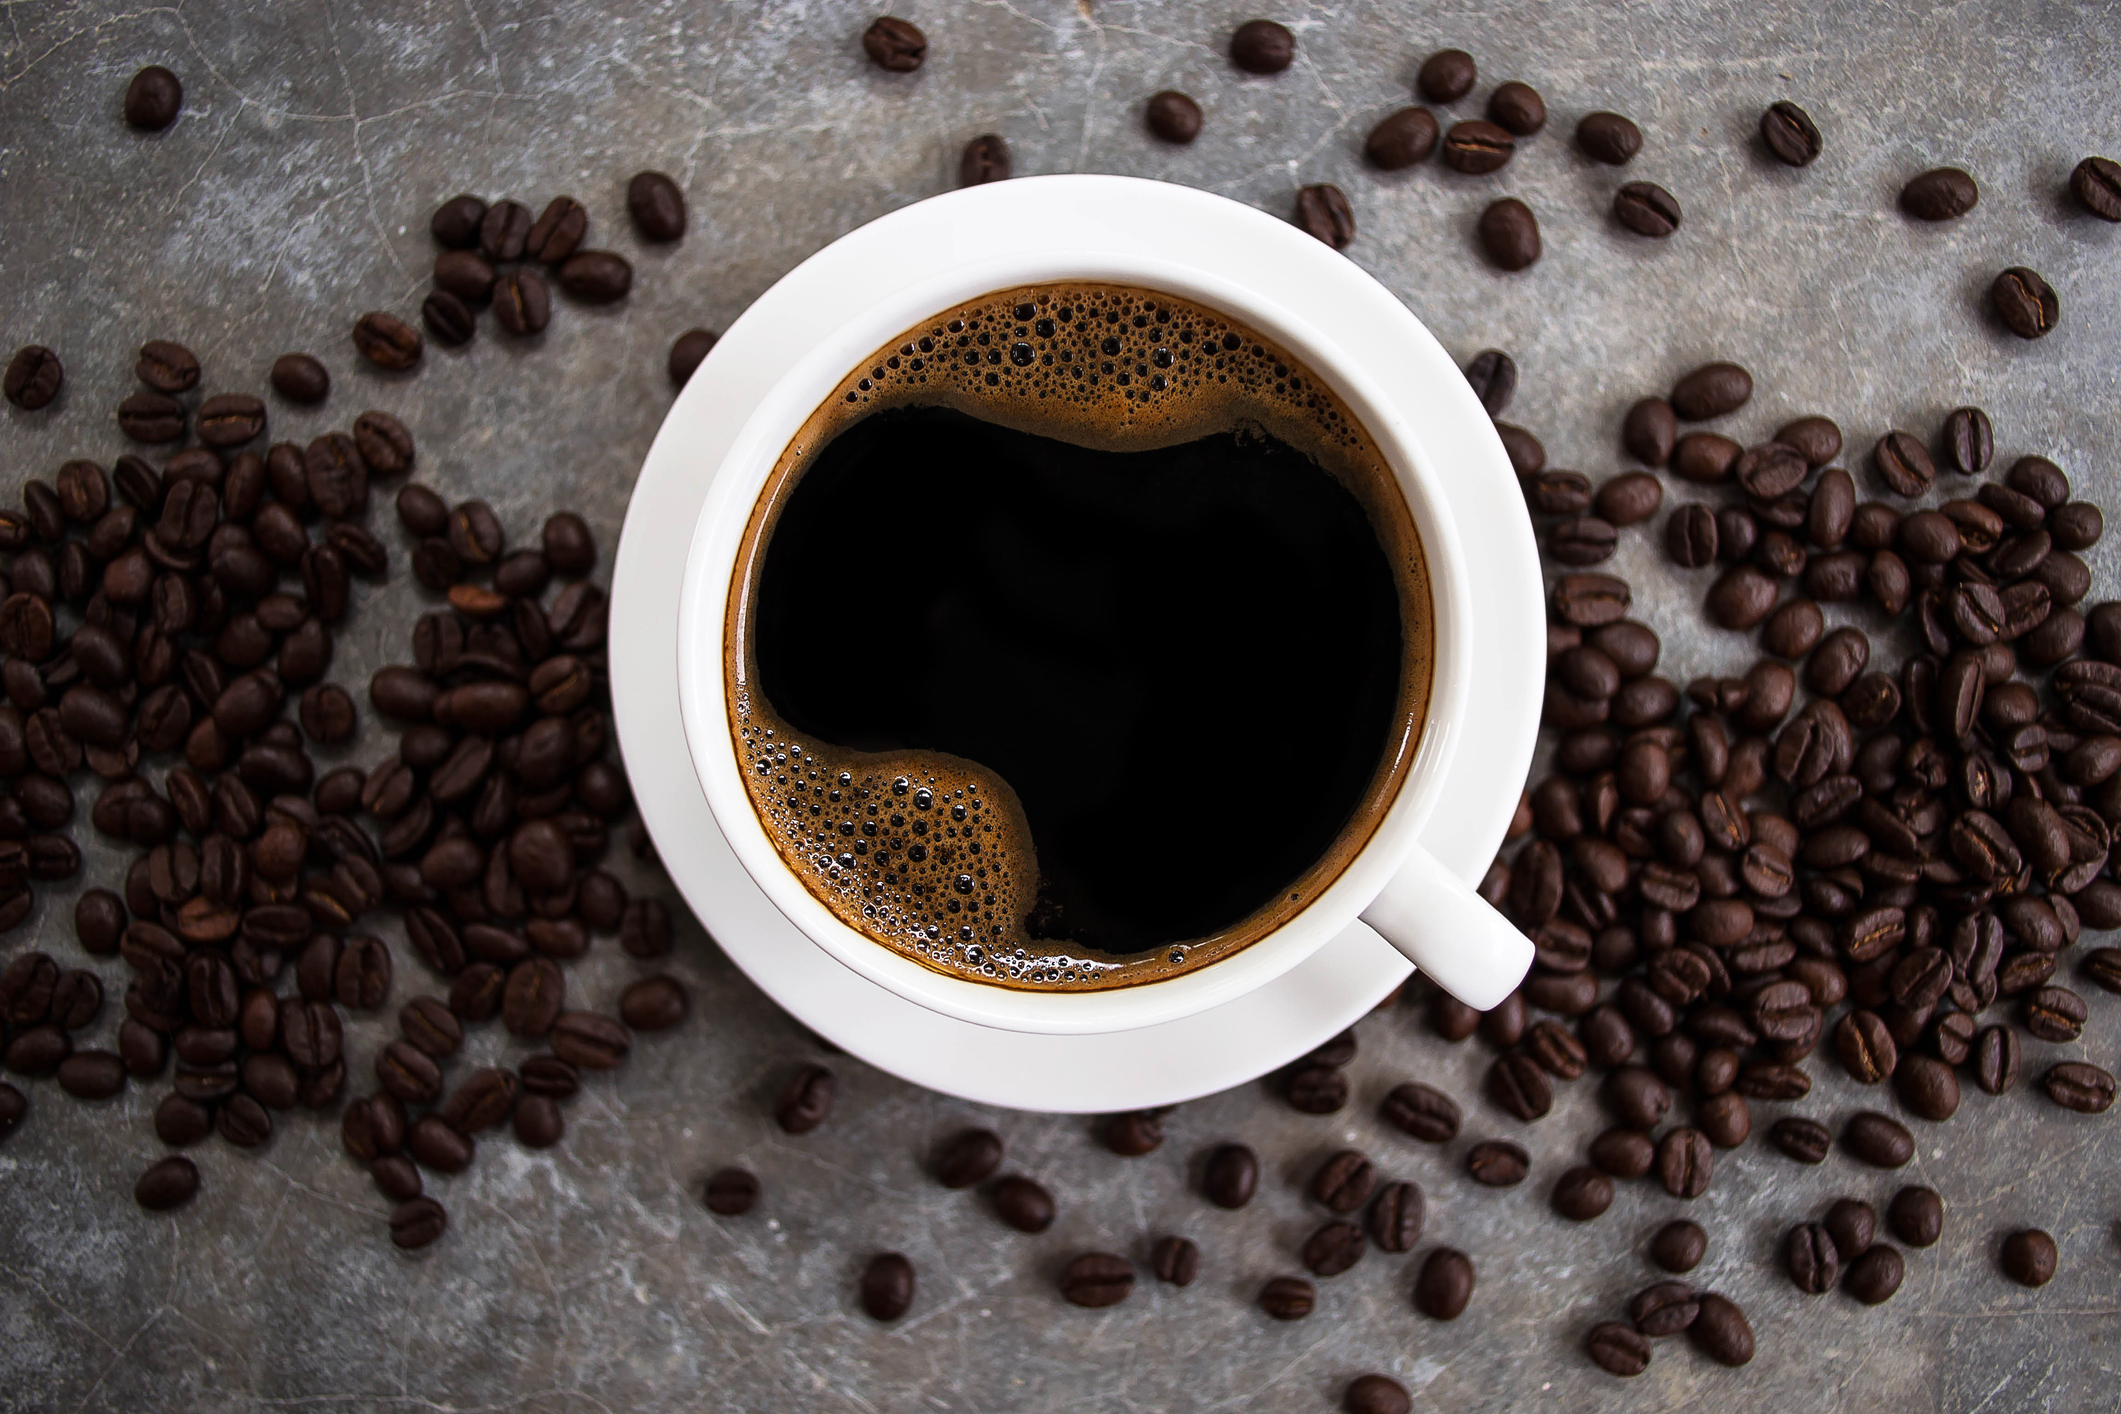 ¿El café produce gastritis? ¿Es dañino? Desmontamos los mitos del café con un experto